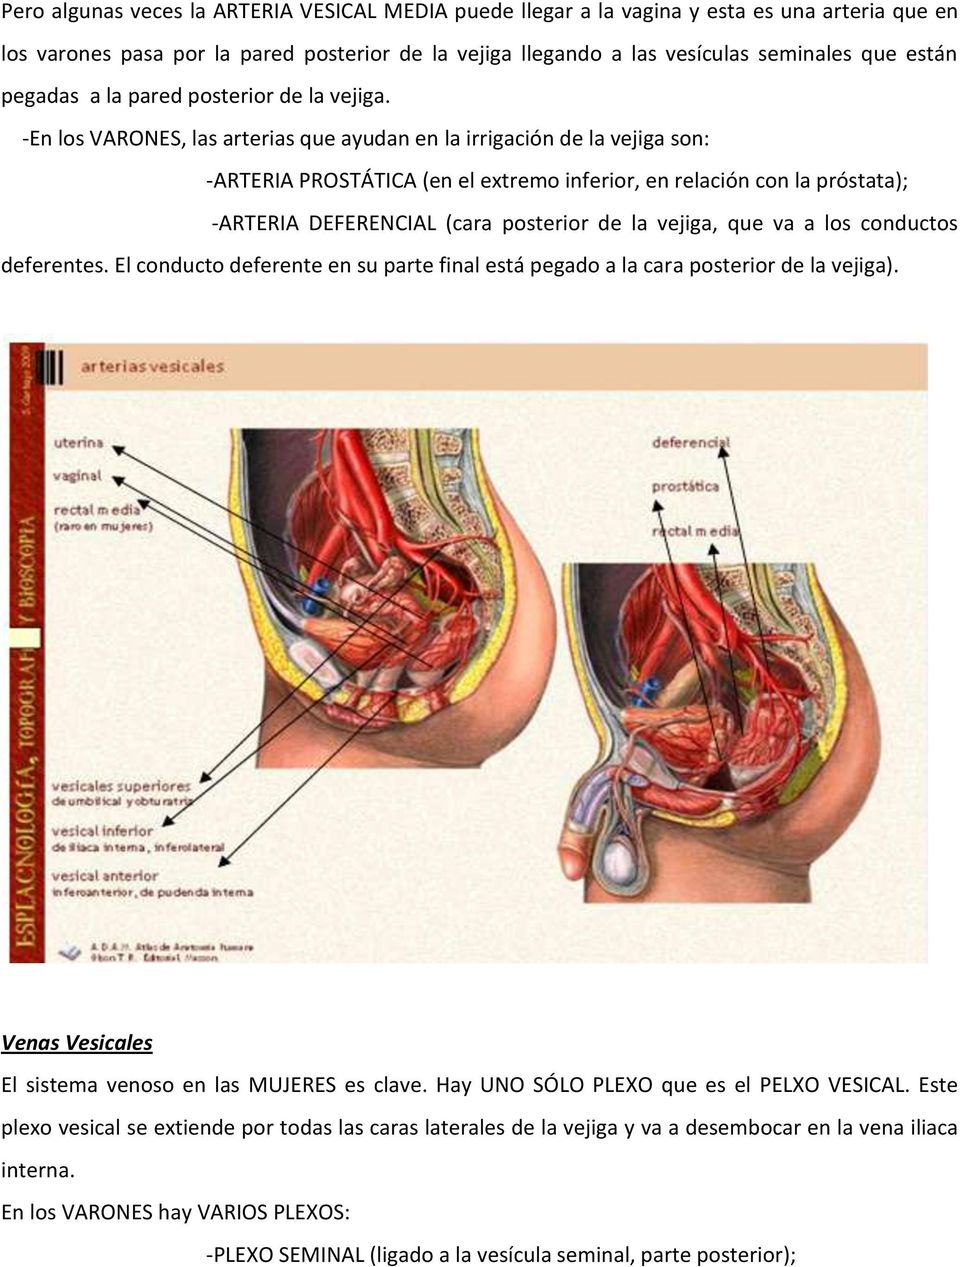 -En los VARONES, las arterias que ayudan en la irrigación de la vejiga son: -ARTERIA PROSTÁTICA (en el extremo inferior, en relación con la próstata); -ARTERIA DEFERENCIAL (cara posterior de la